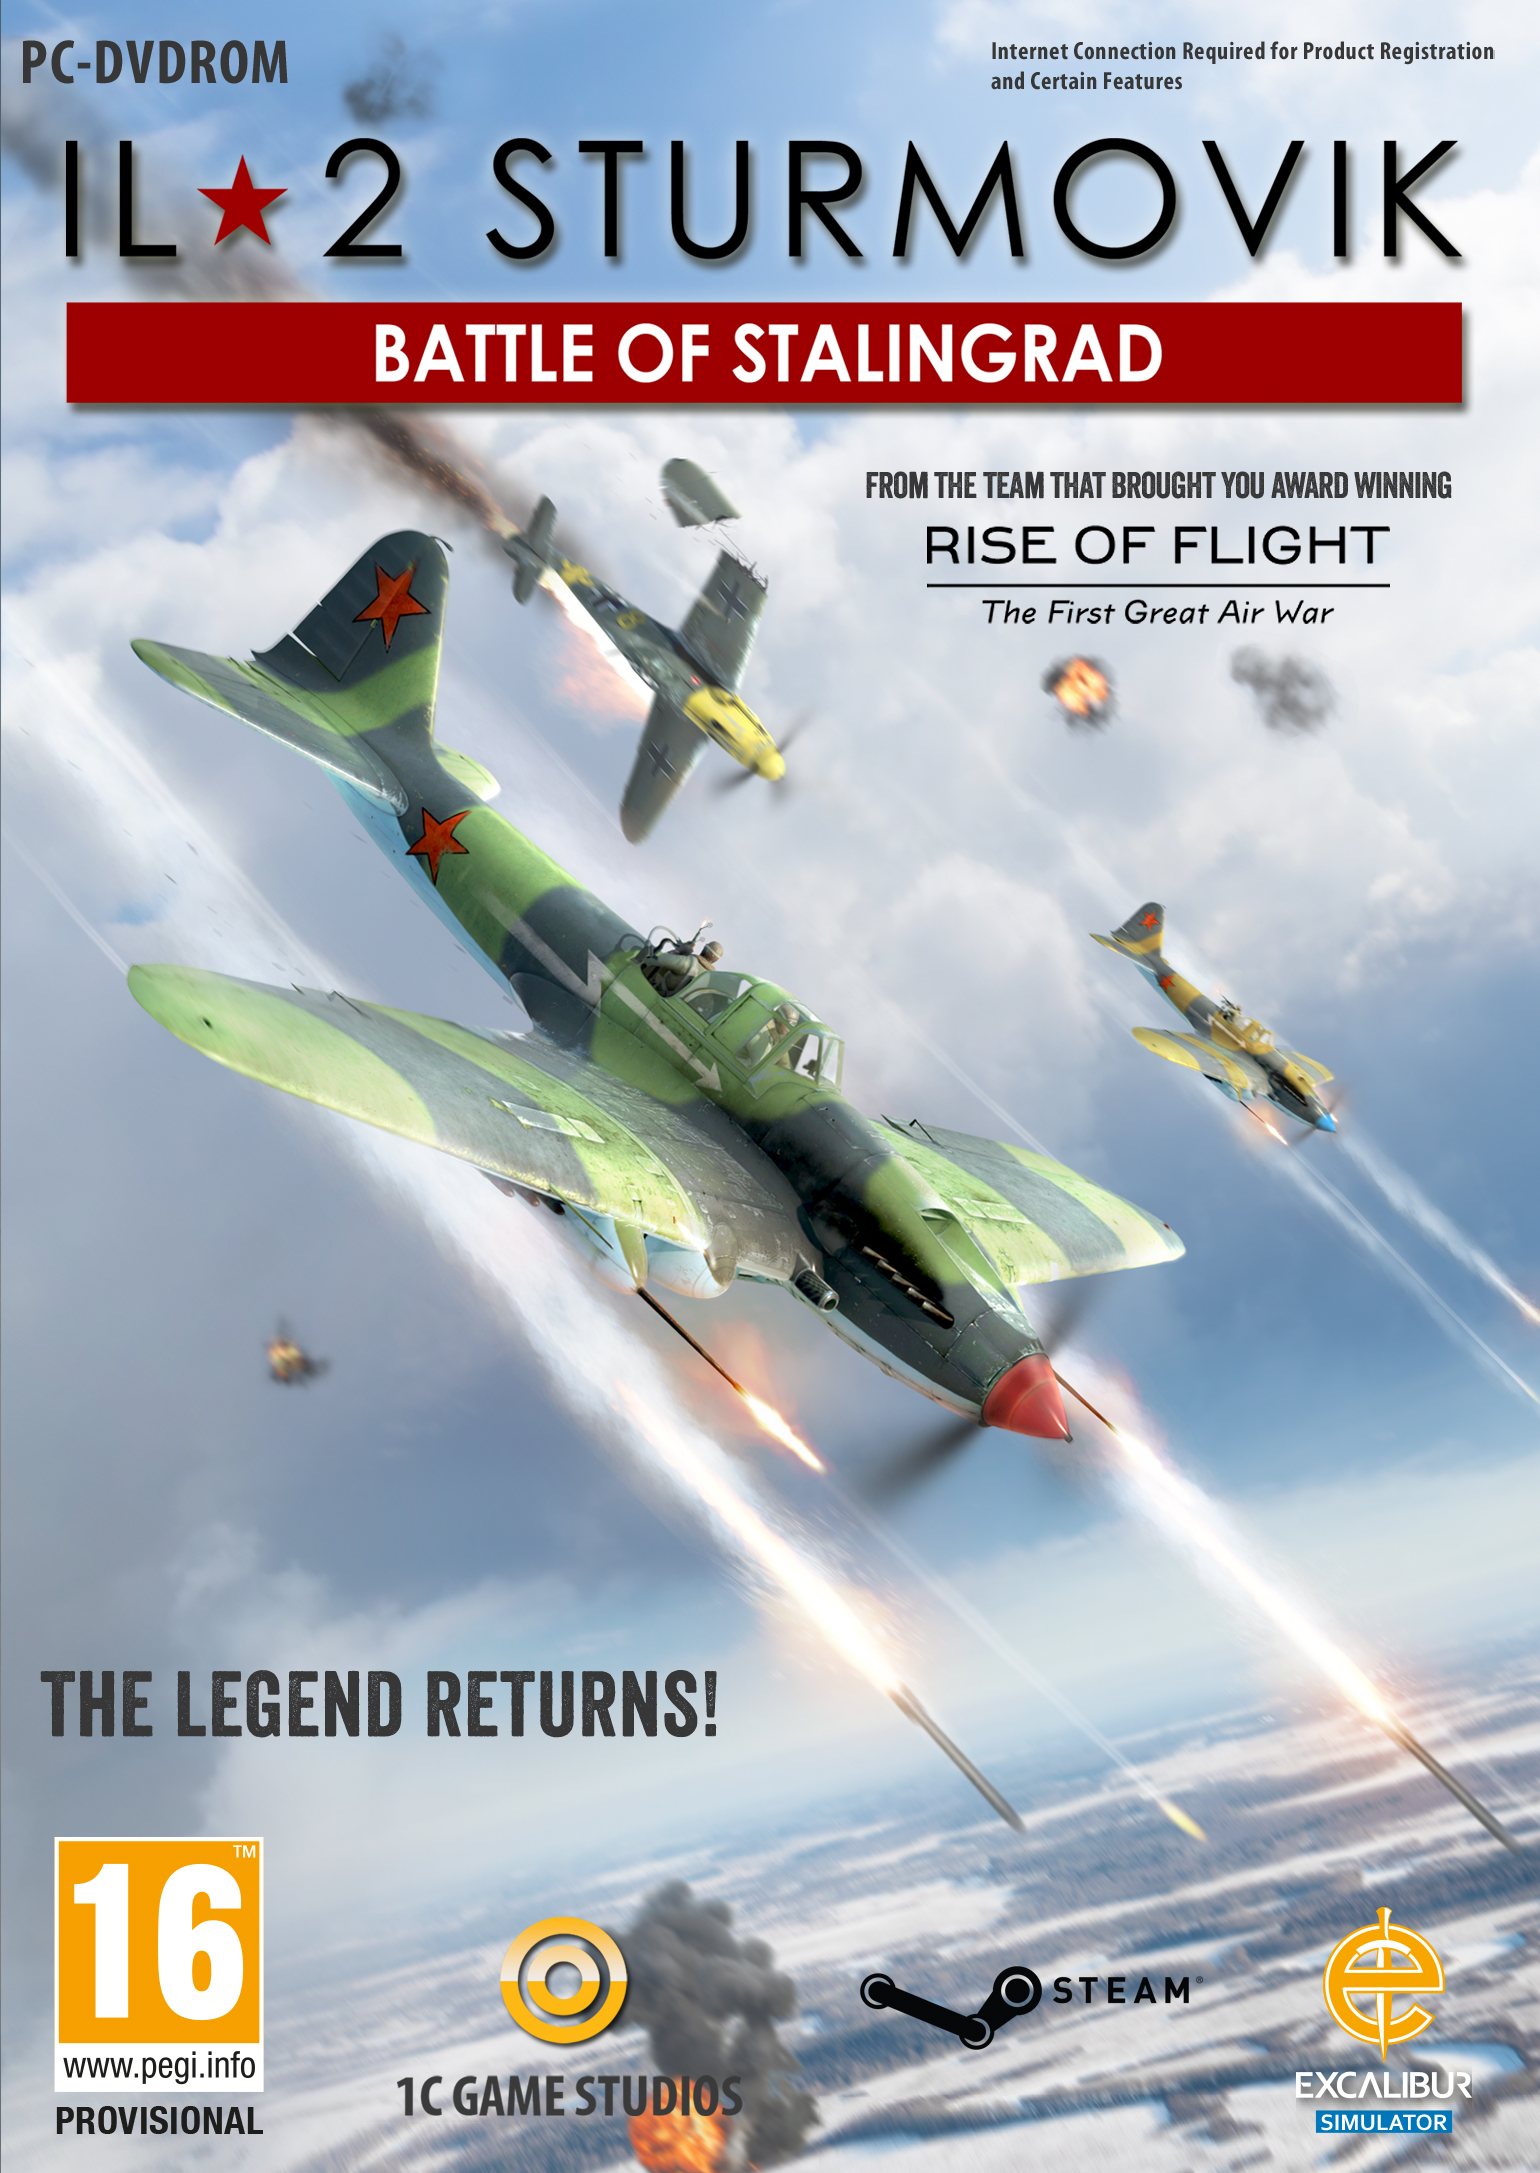 IL-2 Sturmovik Battle Stalingrad - Mod DB